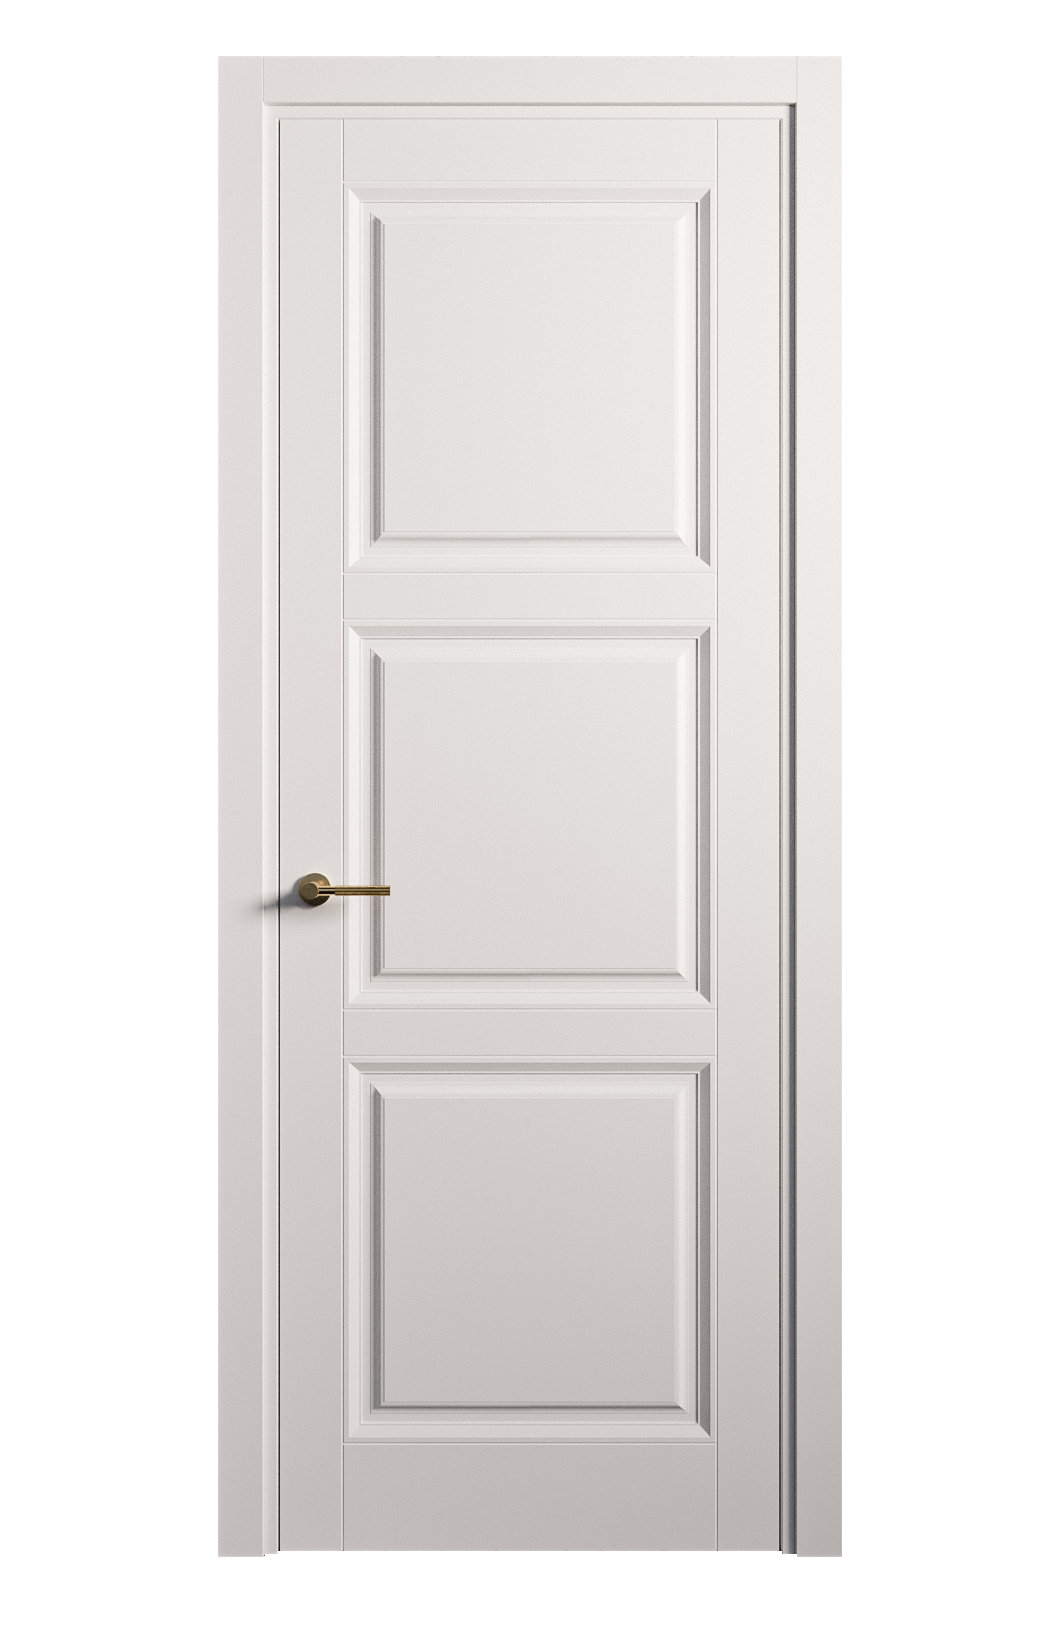 Межкомнатная дверь Venezia-3 глухая эмаль ral 9003 25759